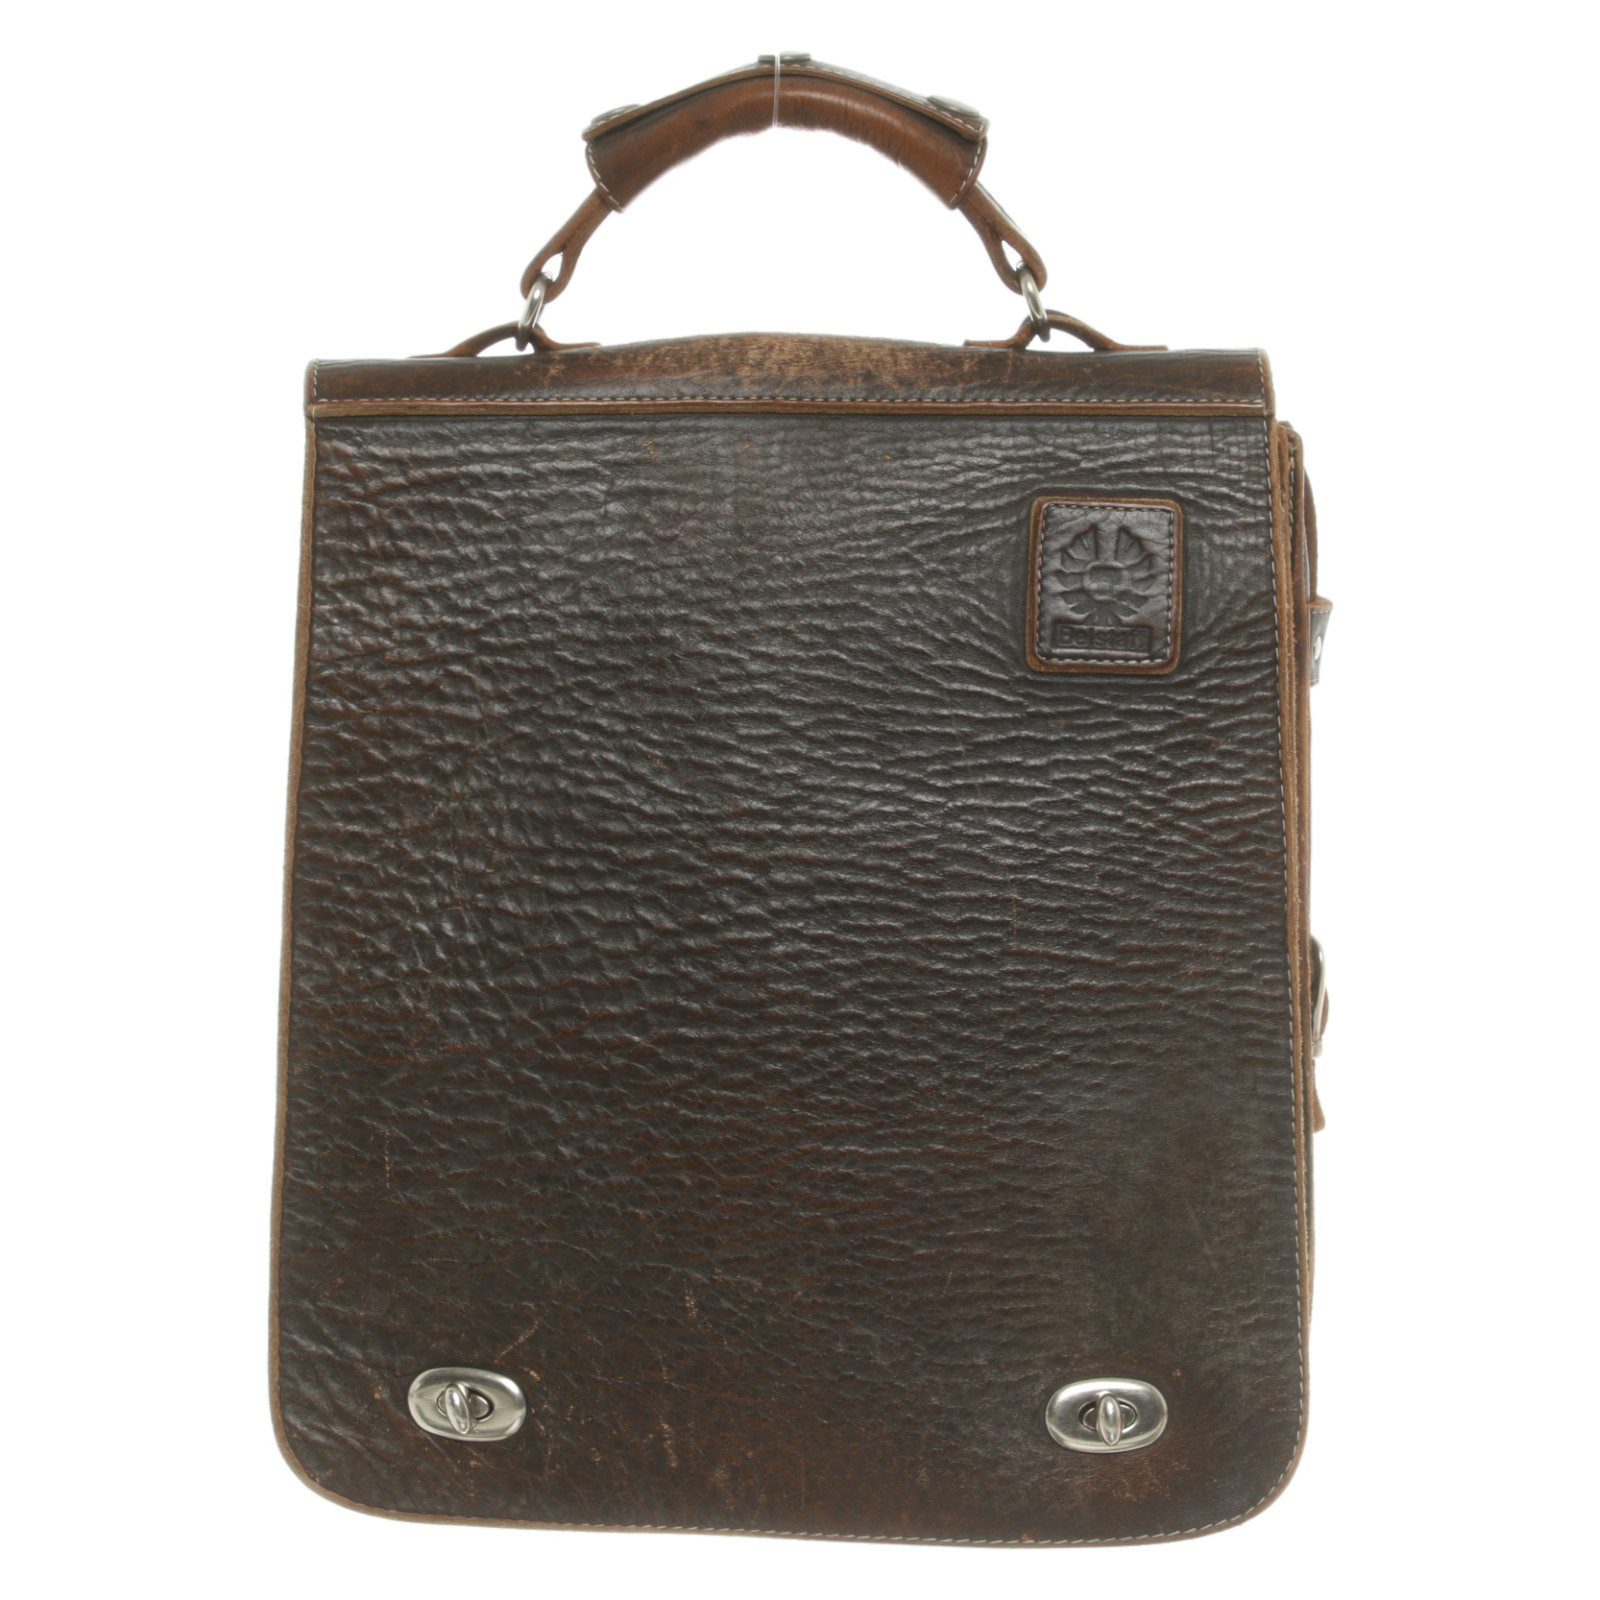 Belstaff Shoulder bag Leather in Brown - Second Hand Belstaff Shoulder bag  Leather in Brown buy used for 270€ (4438903)